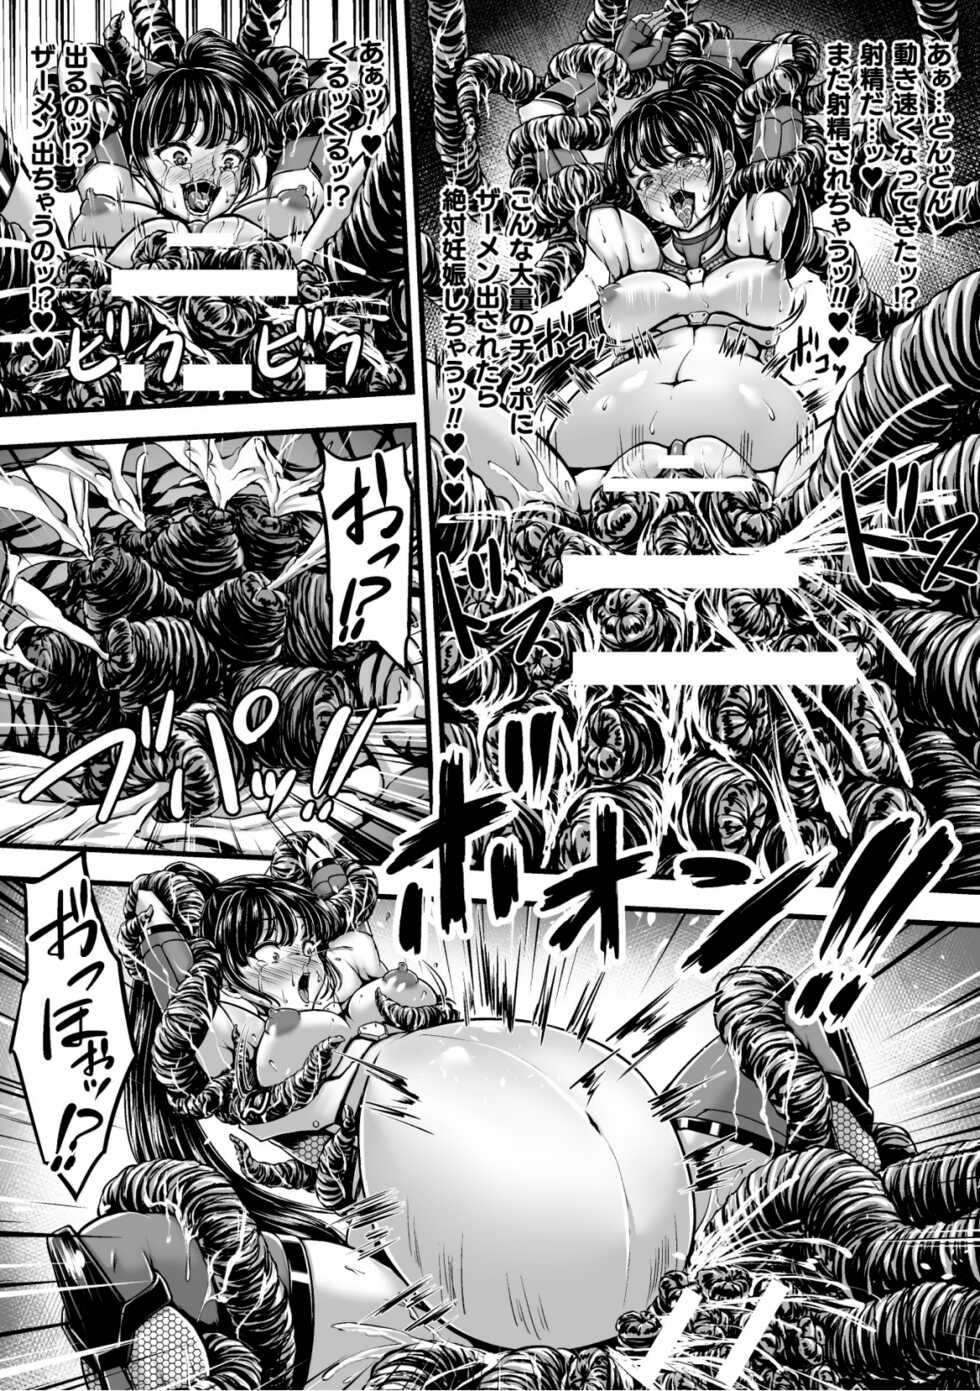 [yuyu] Kangoku Tentacle Battleship Episode 1 - Page 31